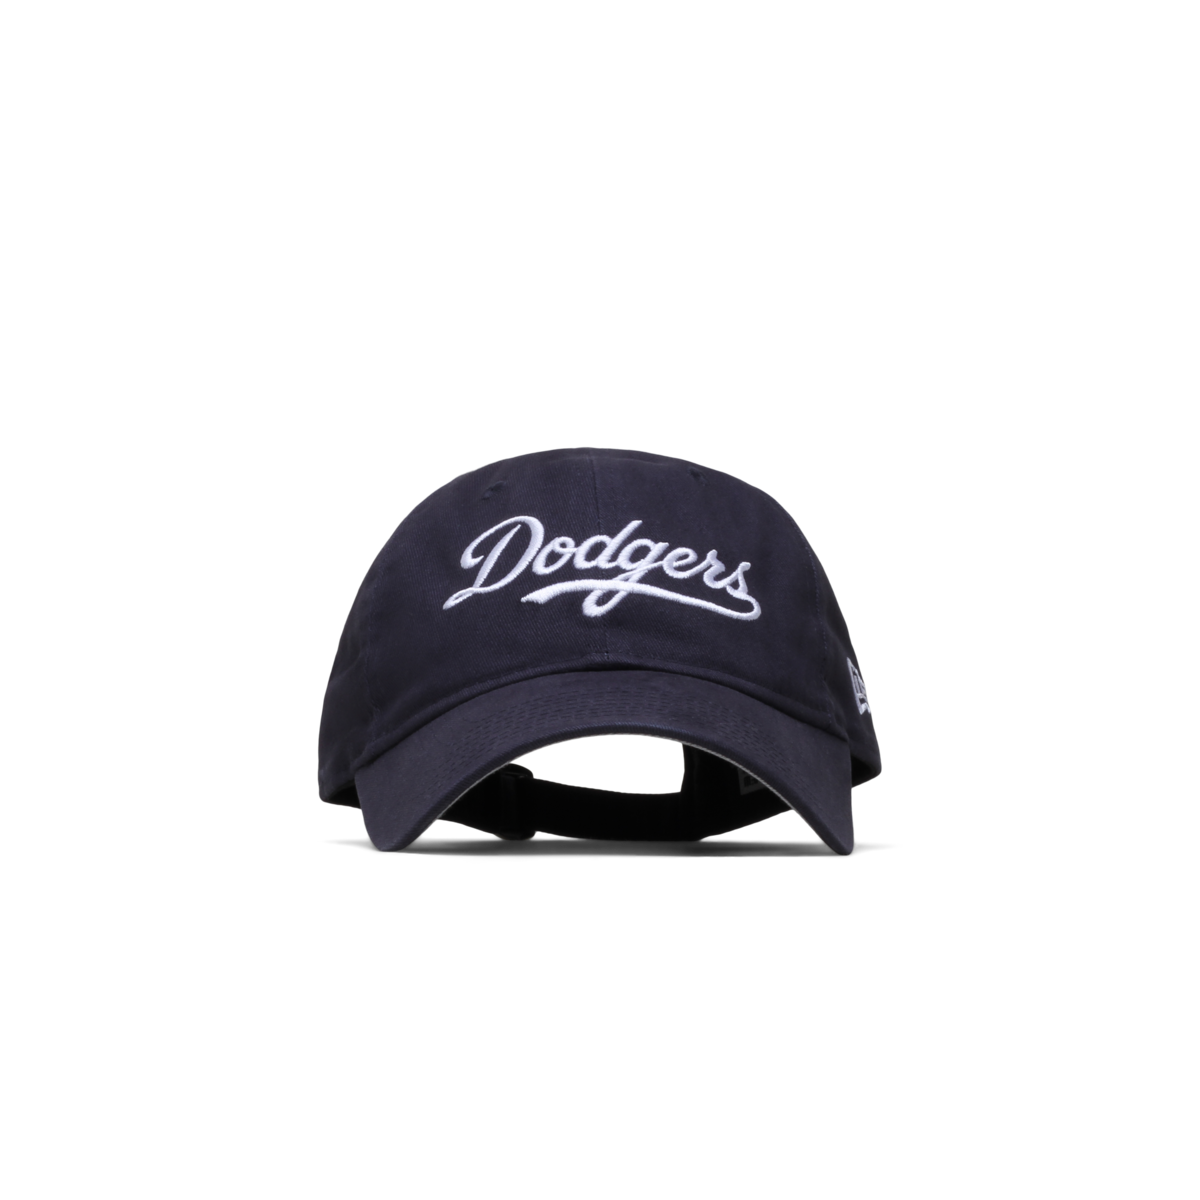 LA Dodgers Adjustable Cap